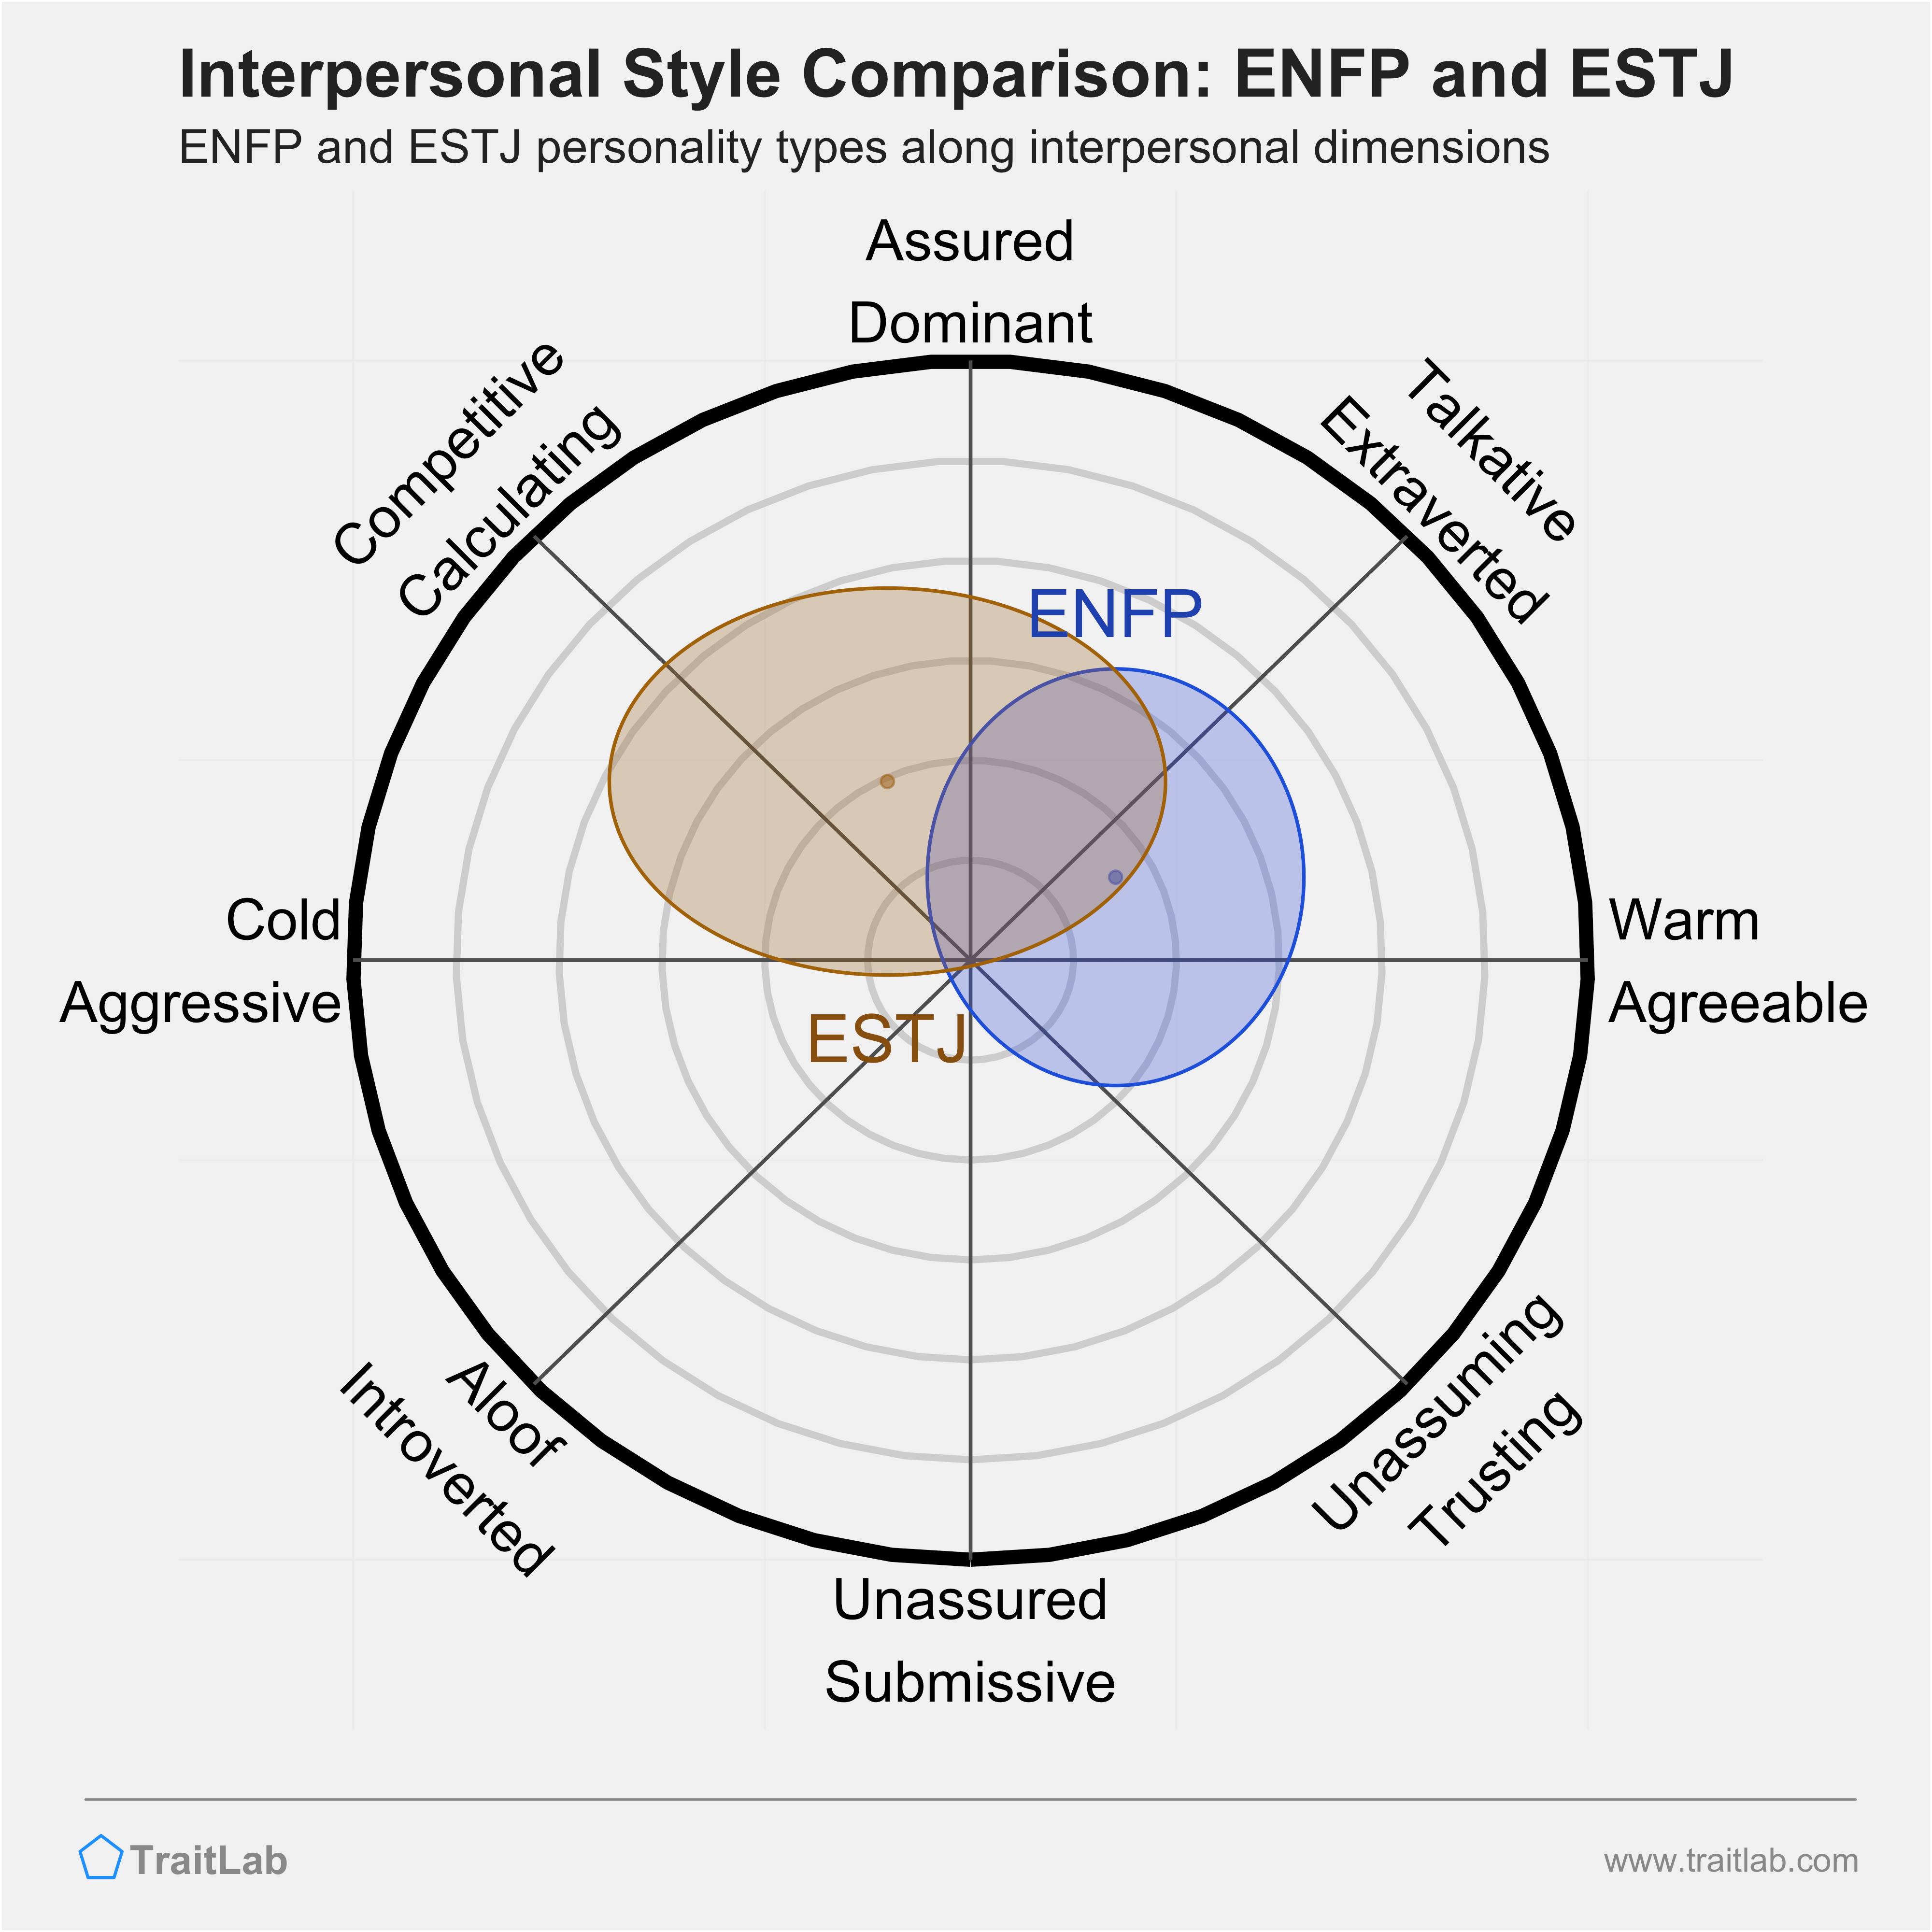 ENFP and ESTJ comparison across interpersonal dimensions